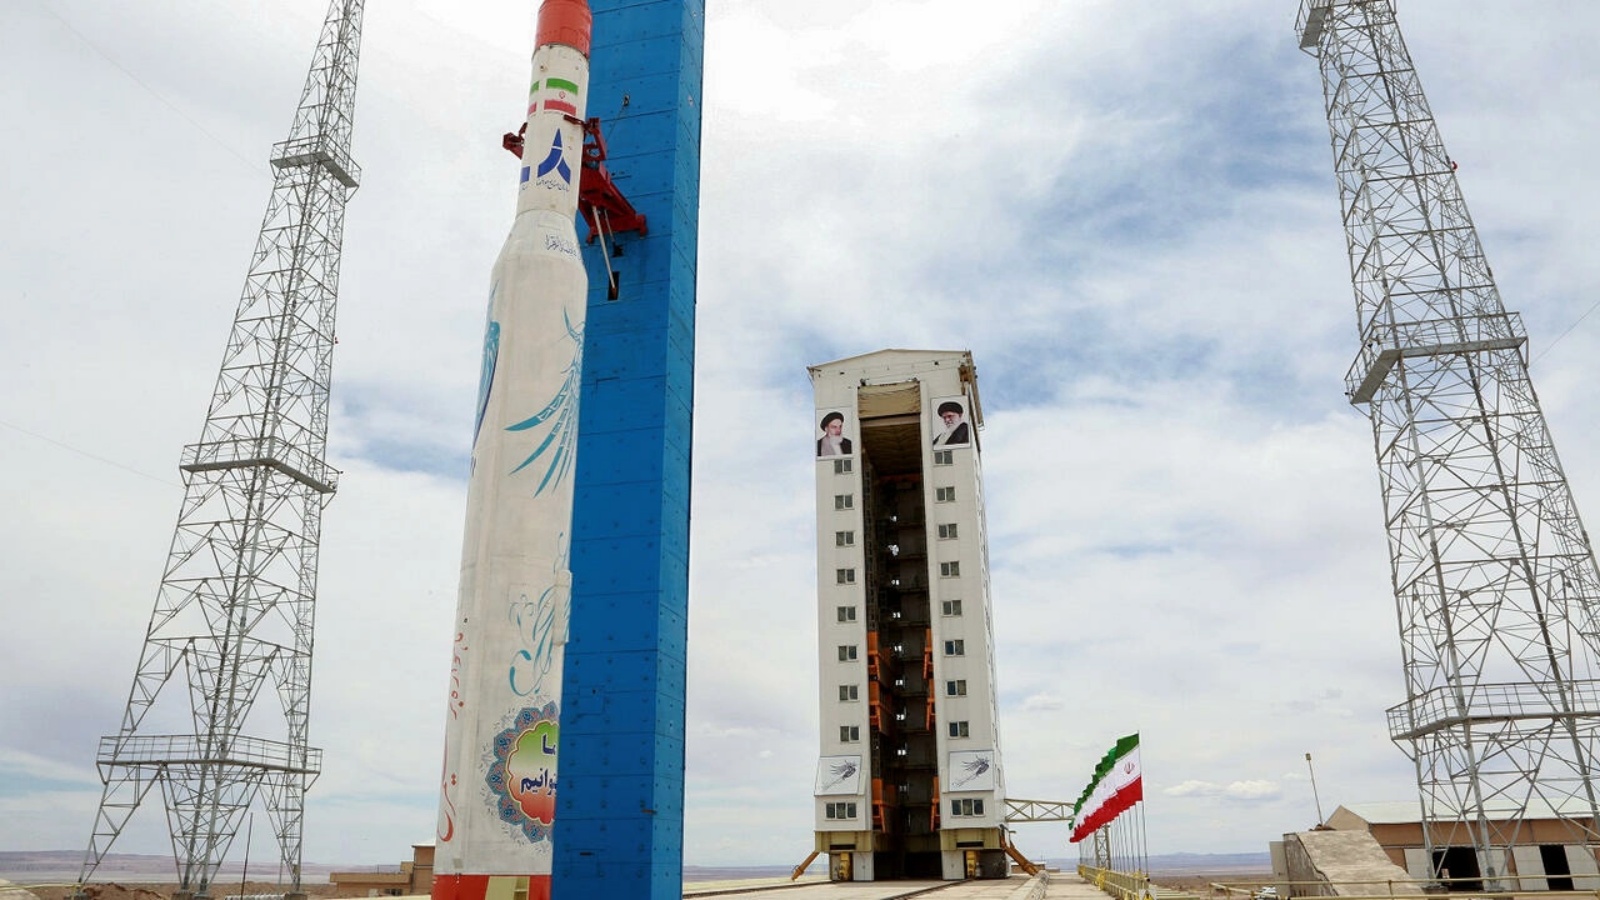 صورة نشرتها وزارة الدفاع الإيرانية في 27 تموز/يوليو 2017 تظهر الصاروخ سيمرغ المستخدم لإطلاق الاقمار الاصطناعية في موقع غير محدد في إيران